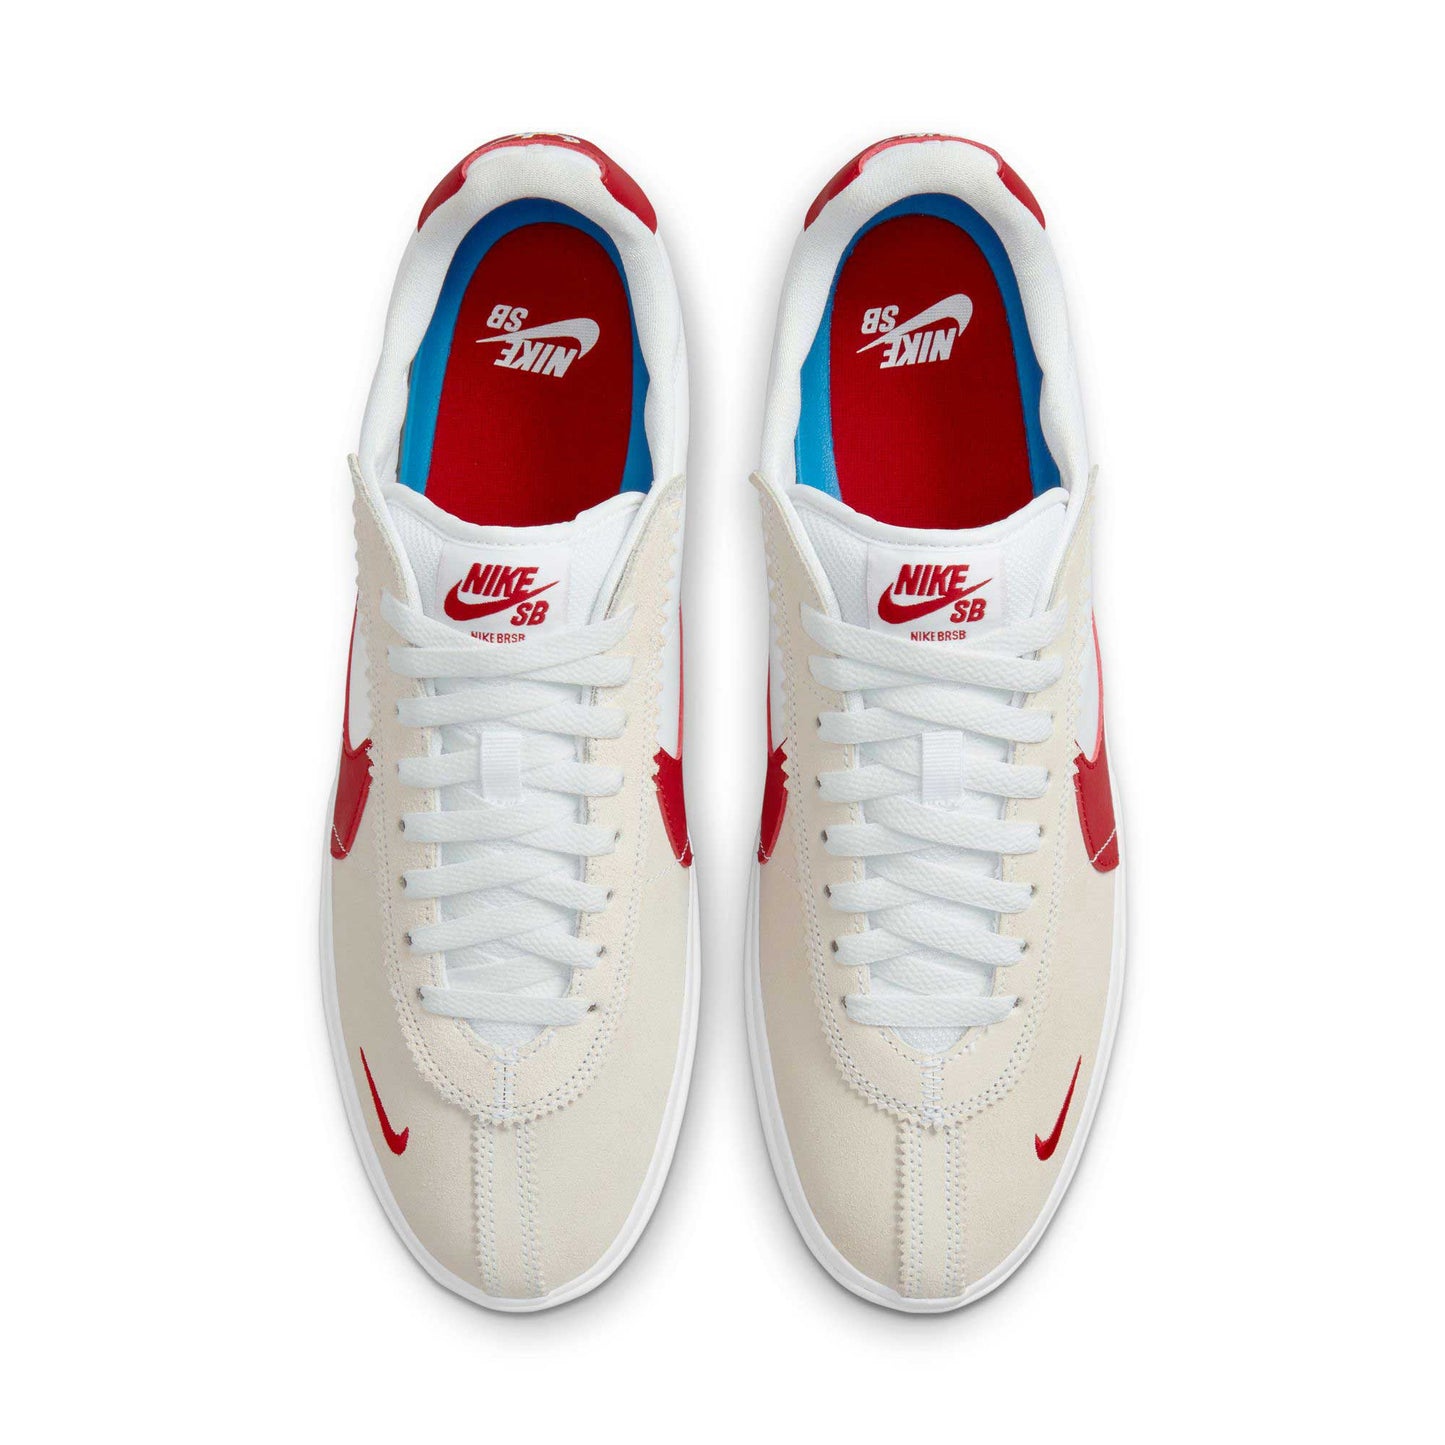 Nike SB BRSB, white/varsity red-varsity royal-white - Tiki Room Skateboards - 5